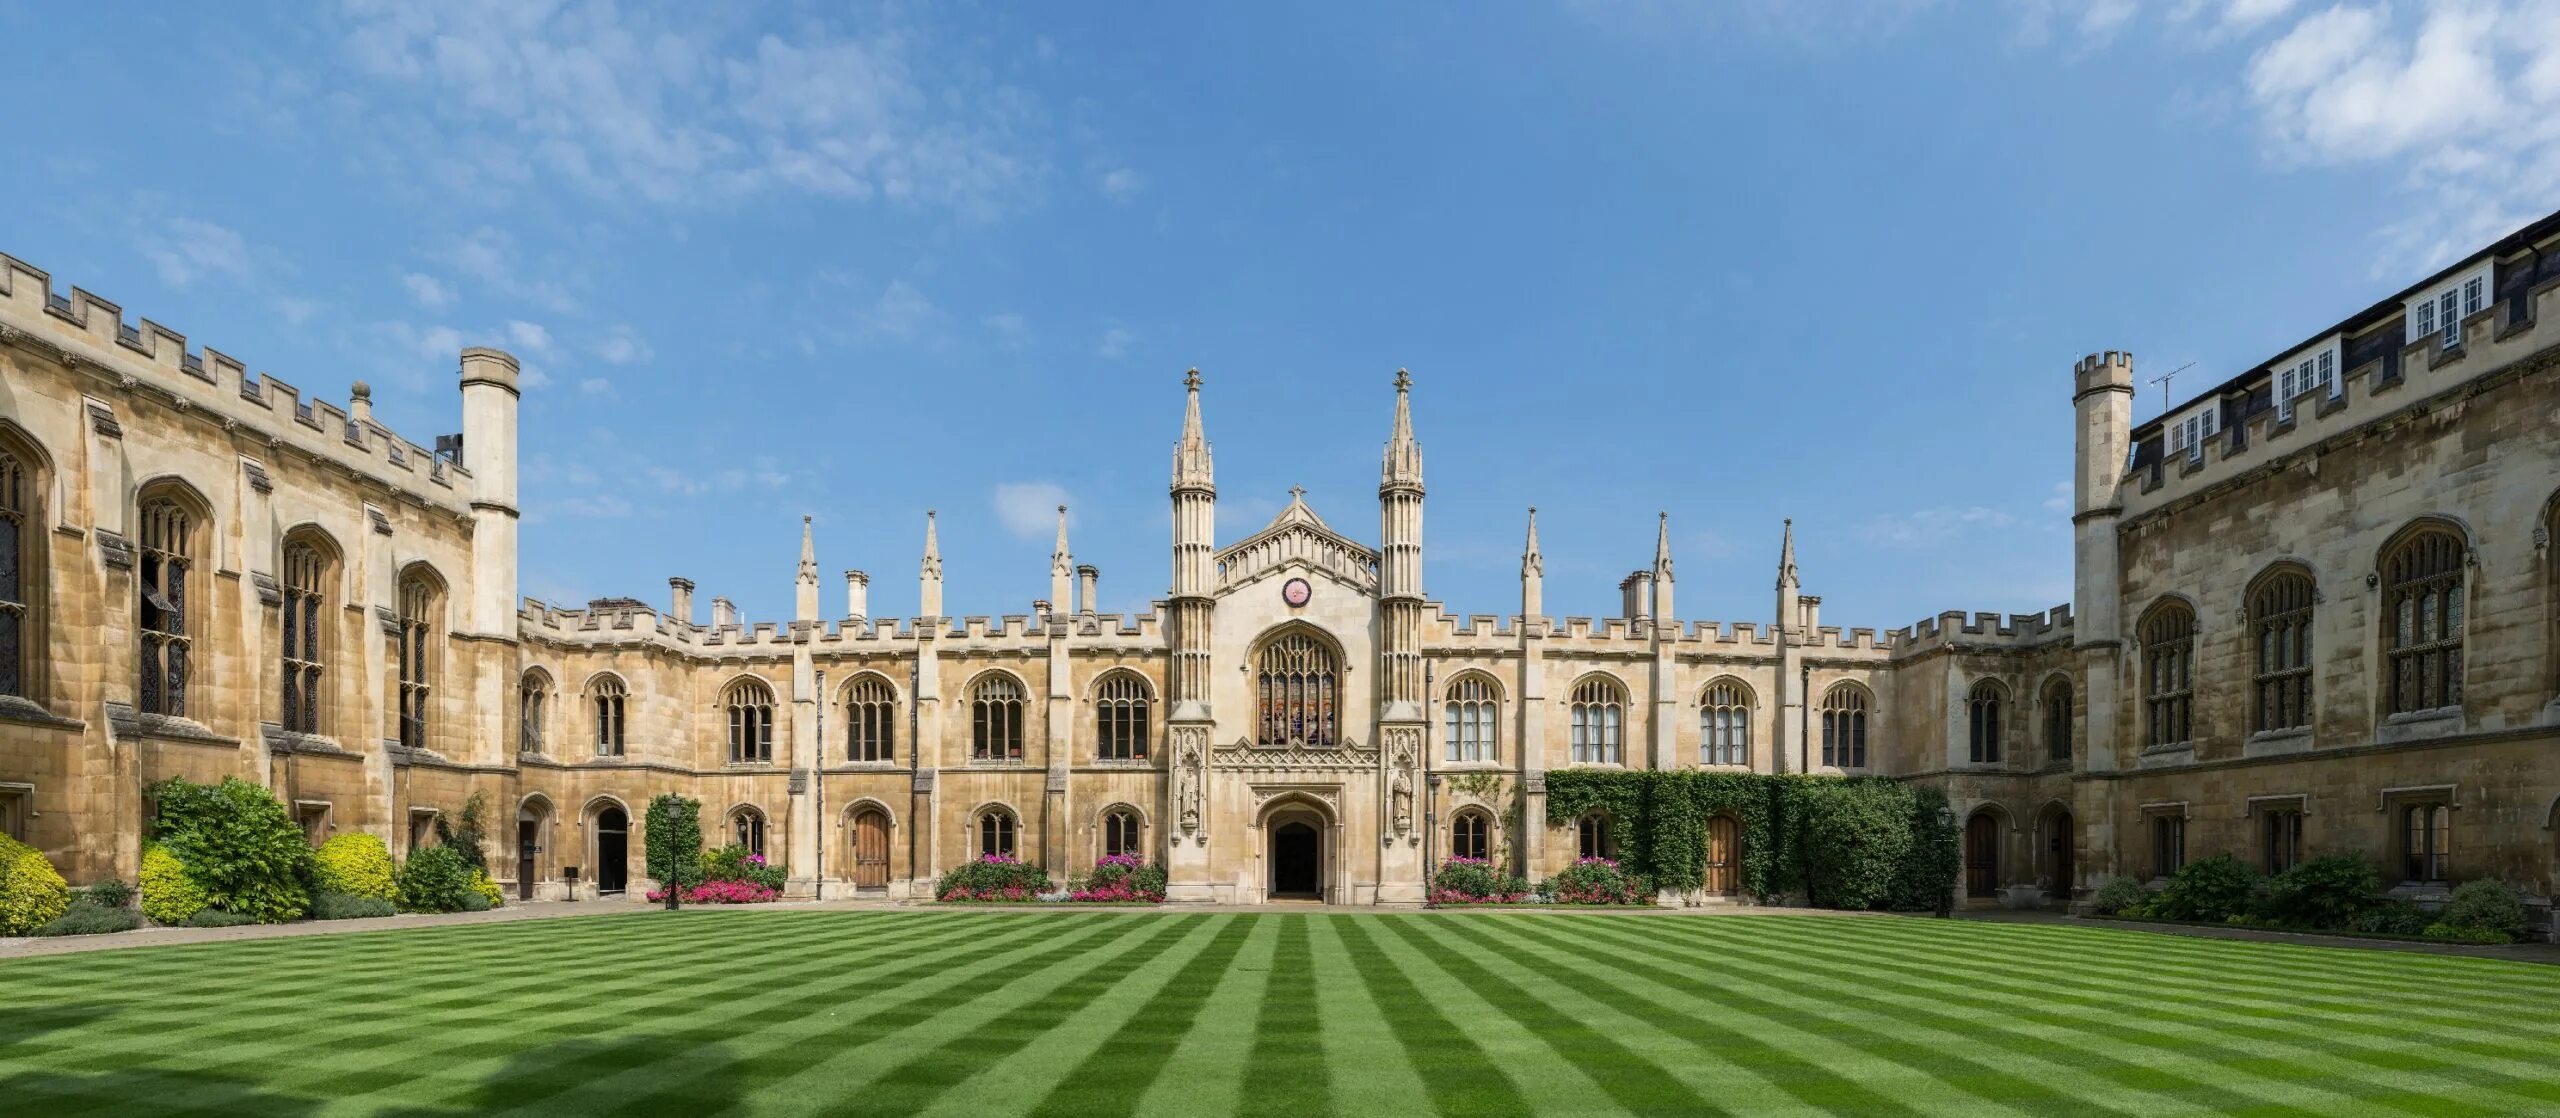 Самый лучший университет в мире. Кембриджский университет. Кембриджский университет в Англии. Кембриджский университет Кембридж. Университет в Кембридже 1209.